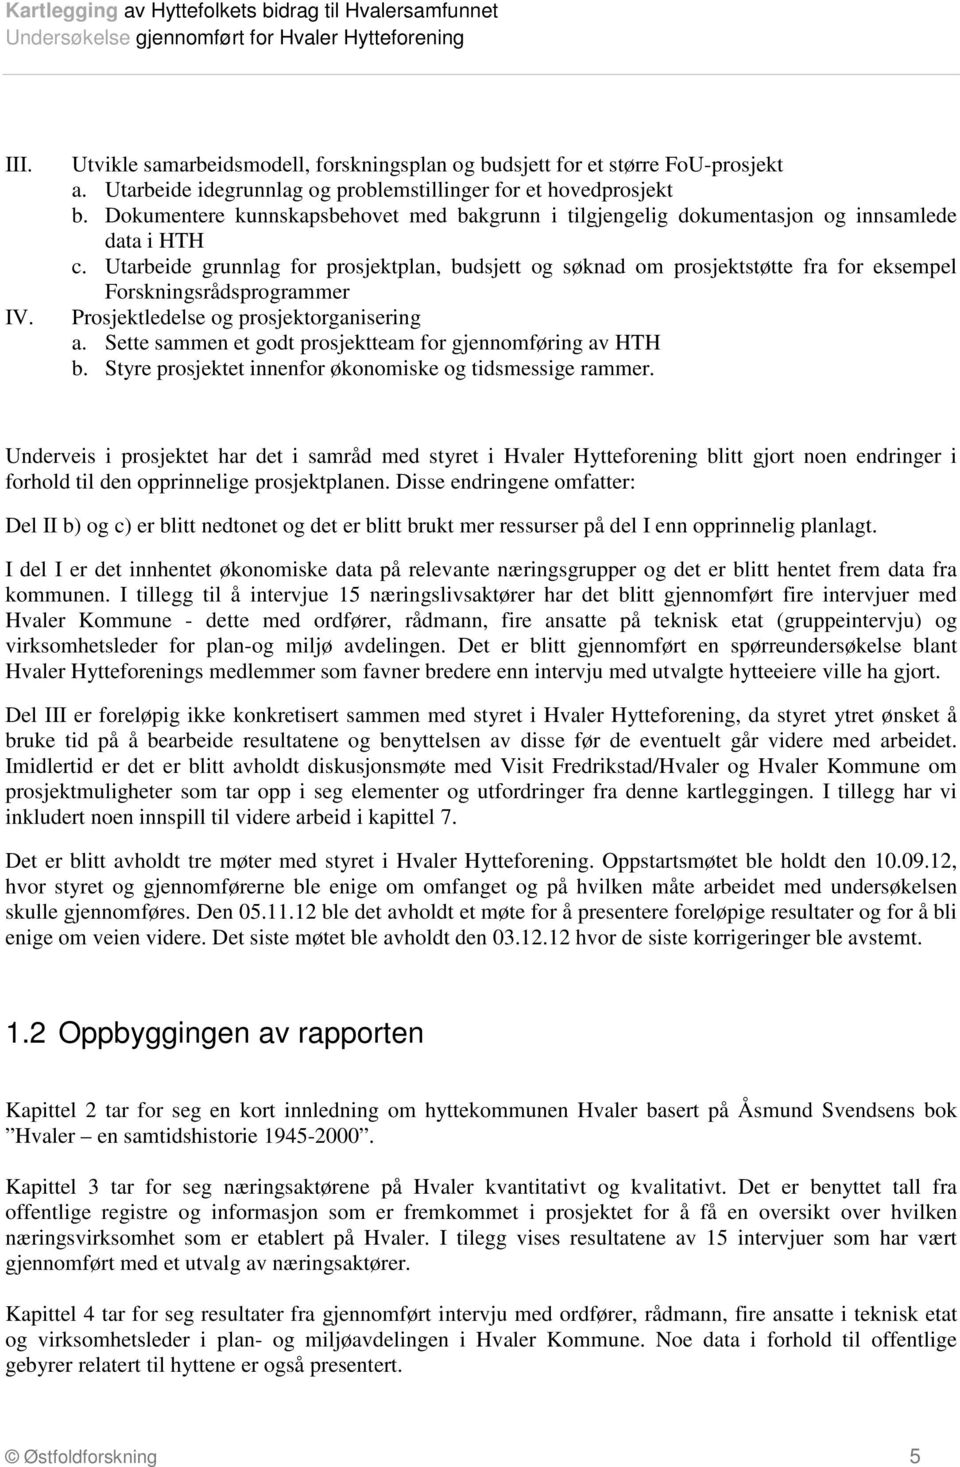 gjennomført for Hvaler Hytteforening - PDF Free Download